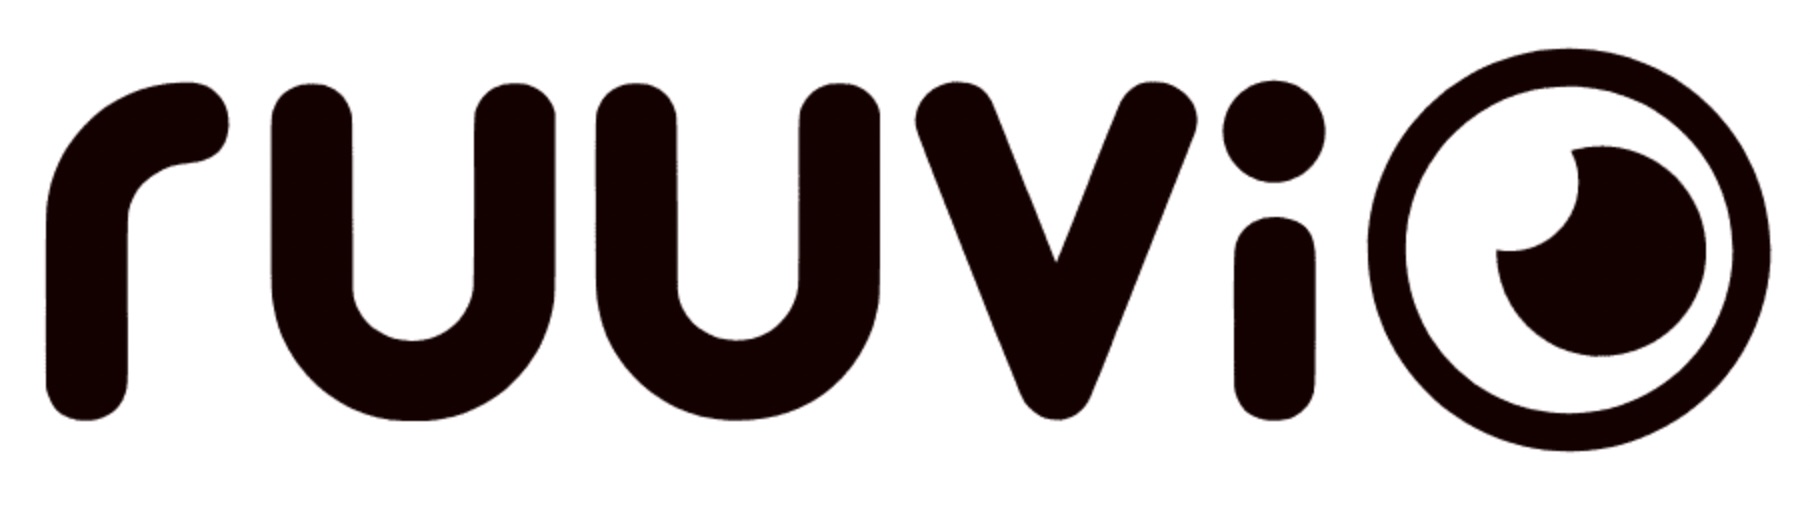 ruuvi_logo